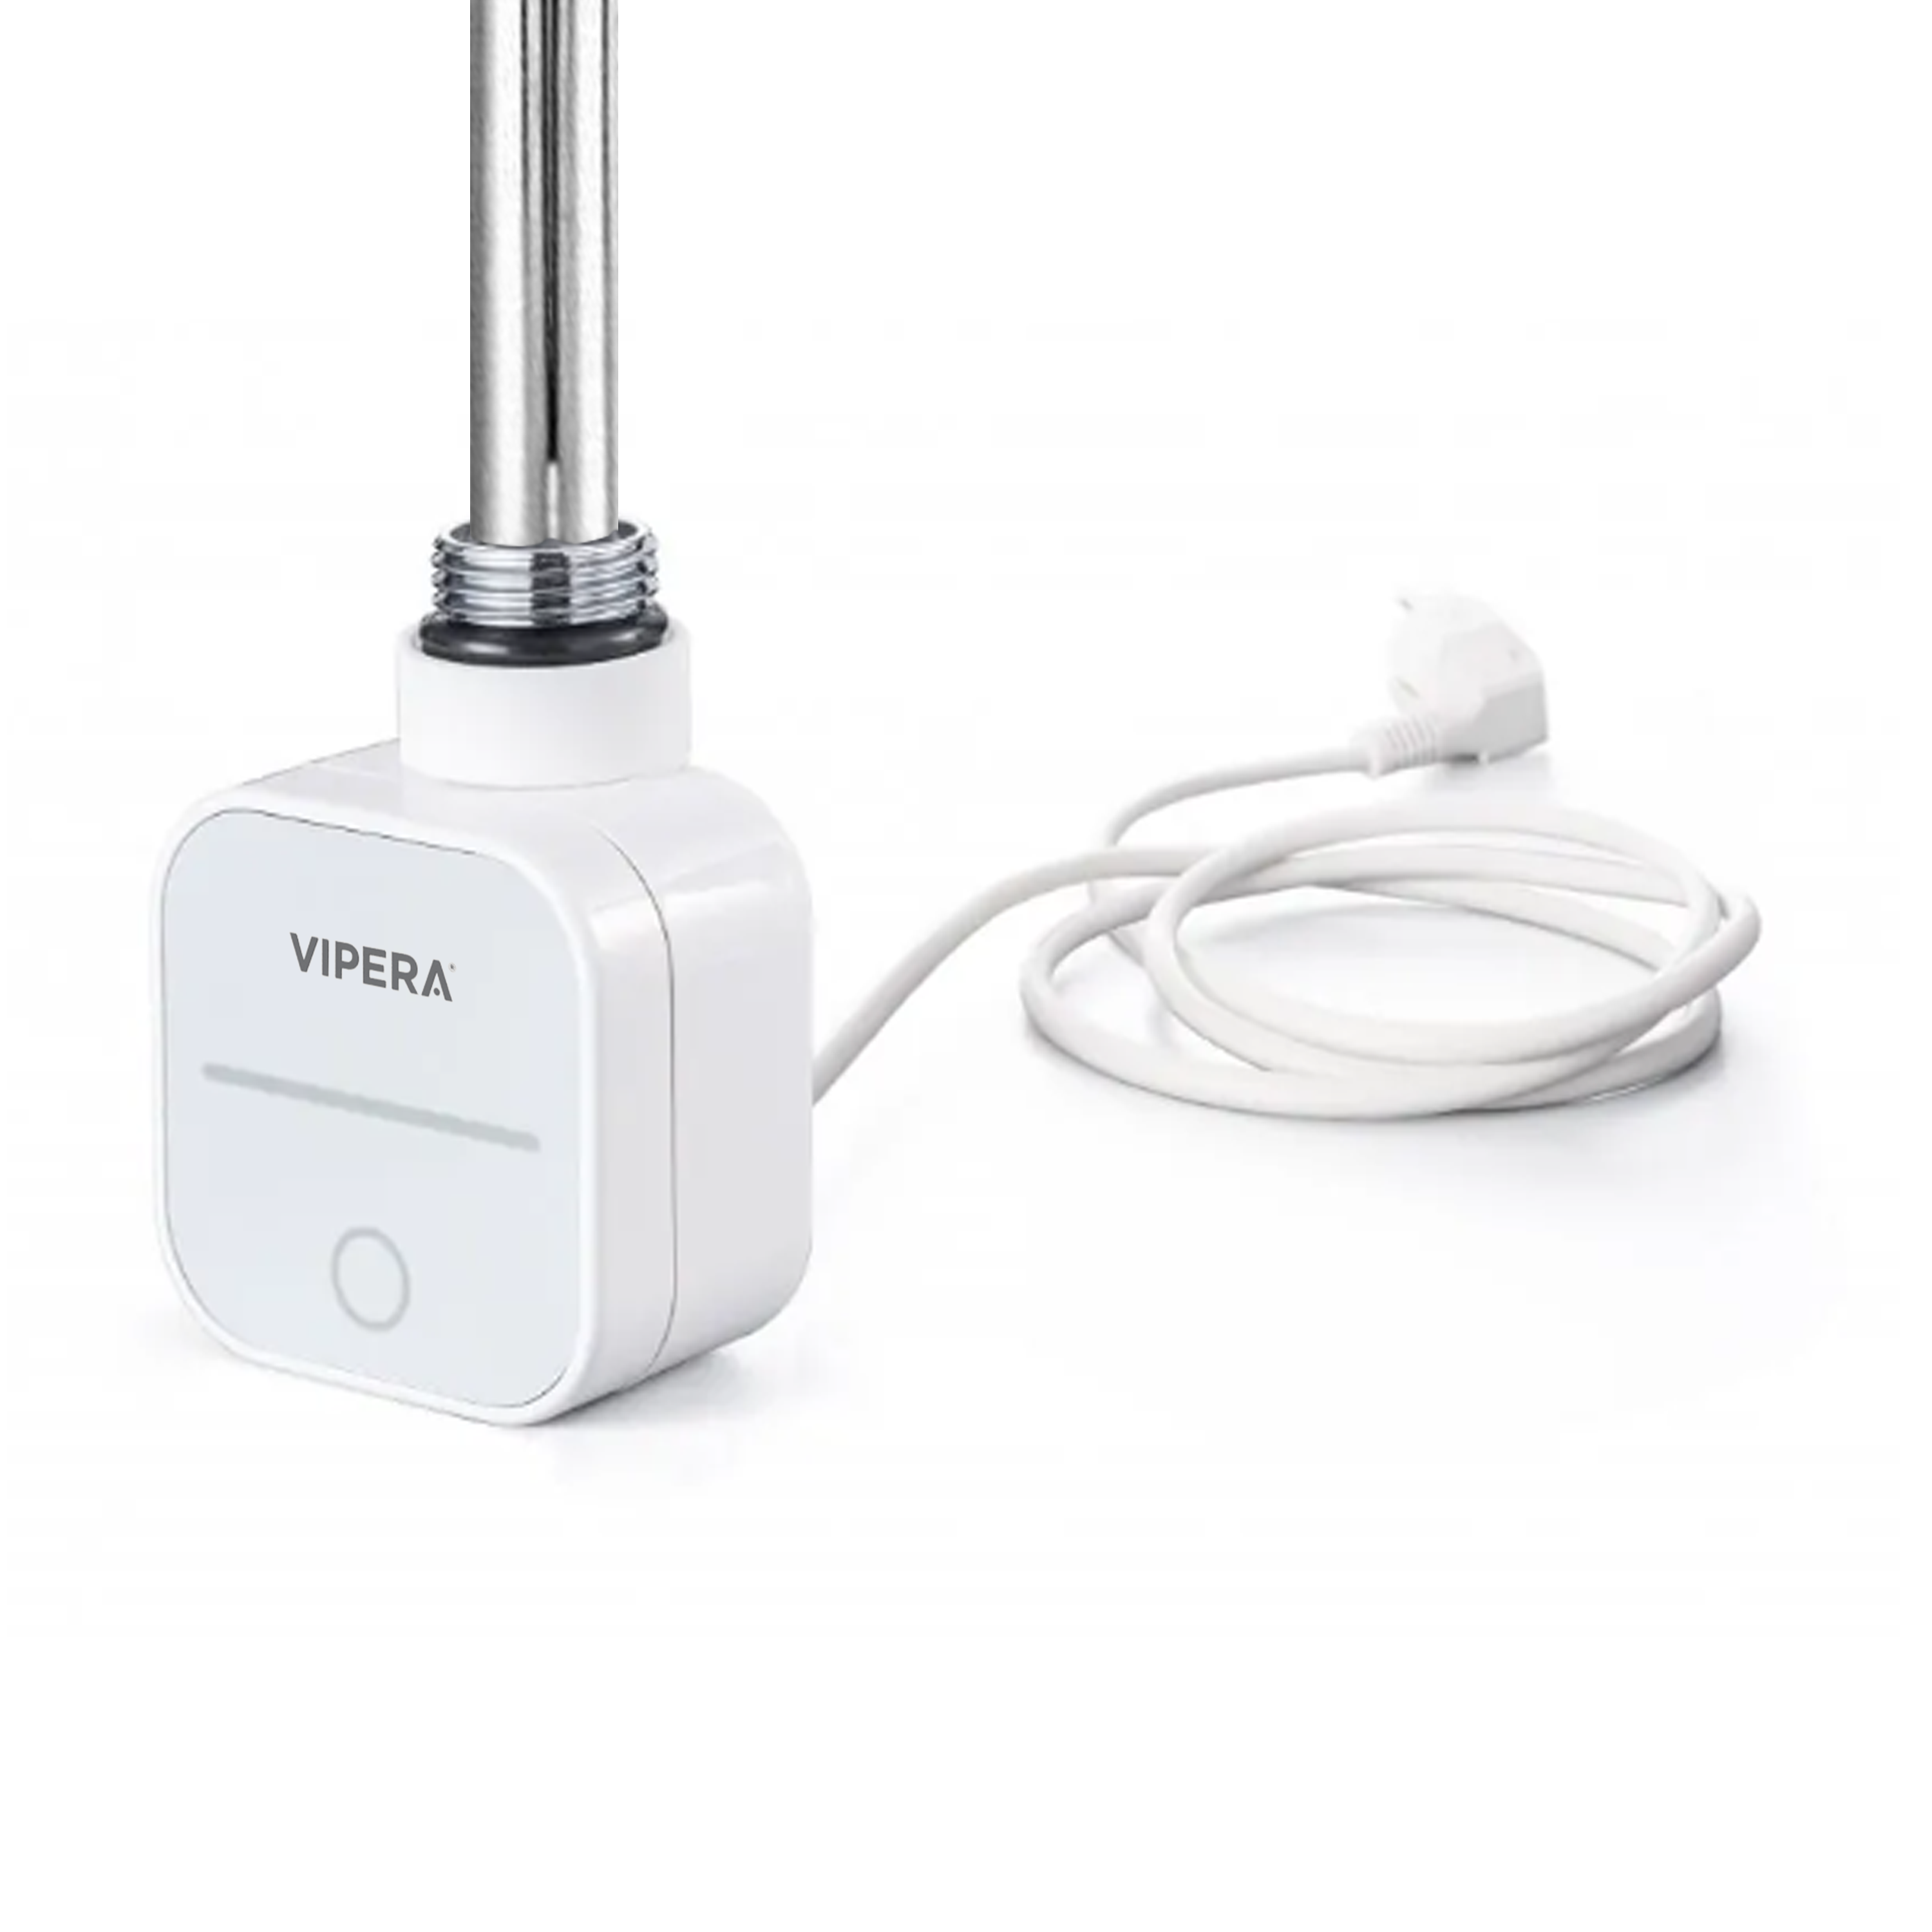 Vipera radiator thermostaat voor elektrische handdoekradiator 1500W programmeerbaar wit